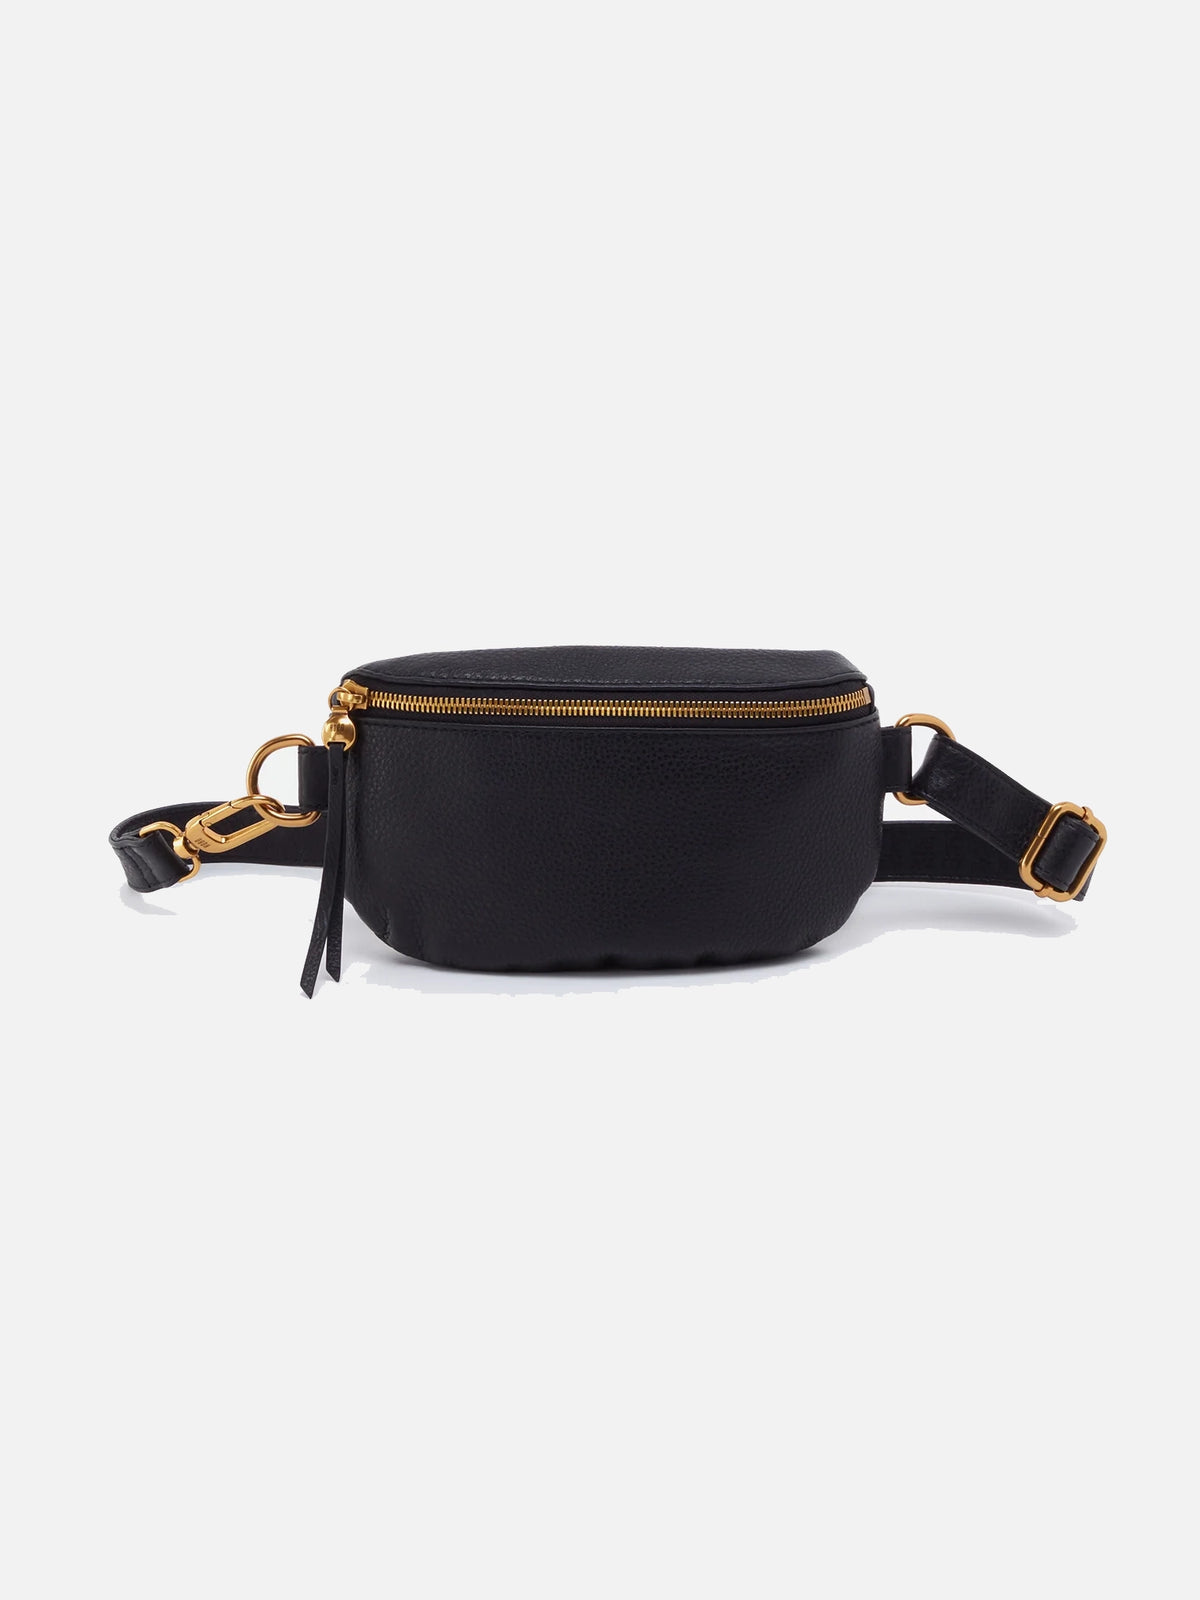 hobo fern belt bag in black pebbled leather